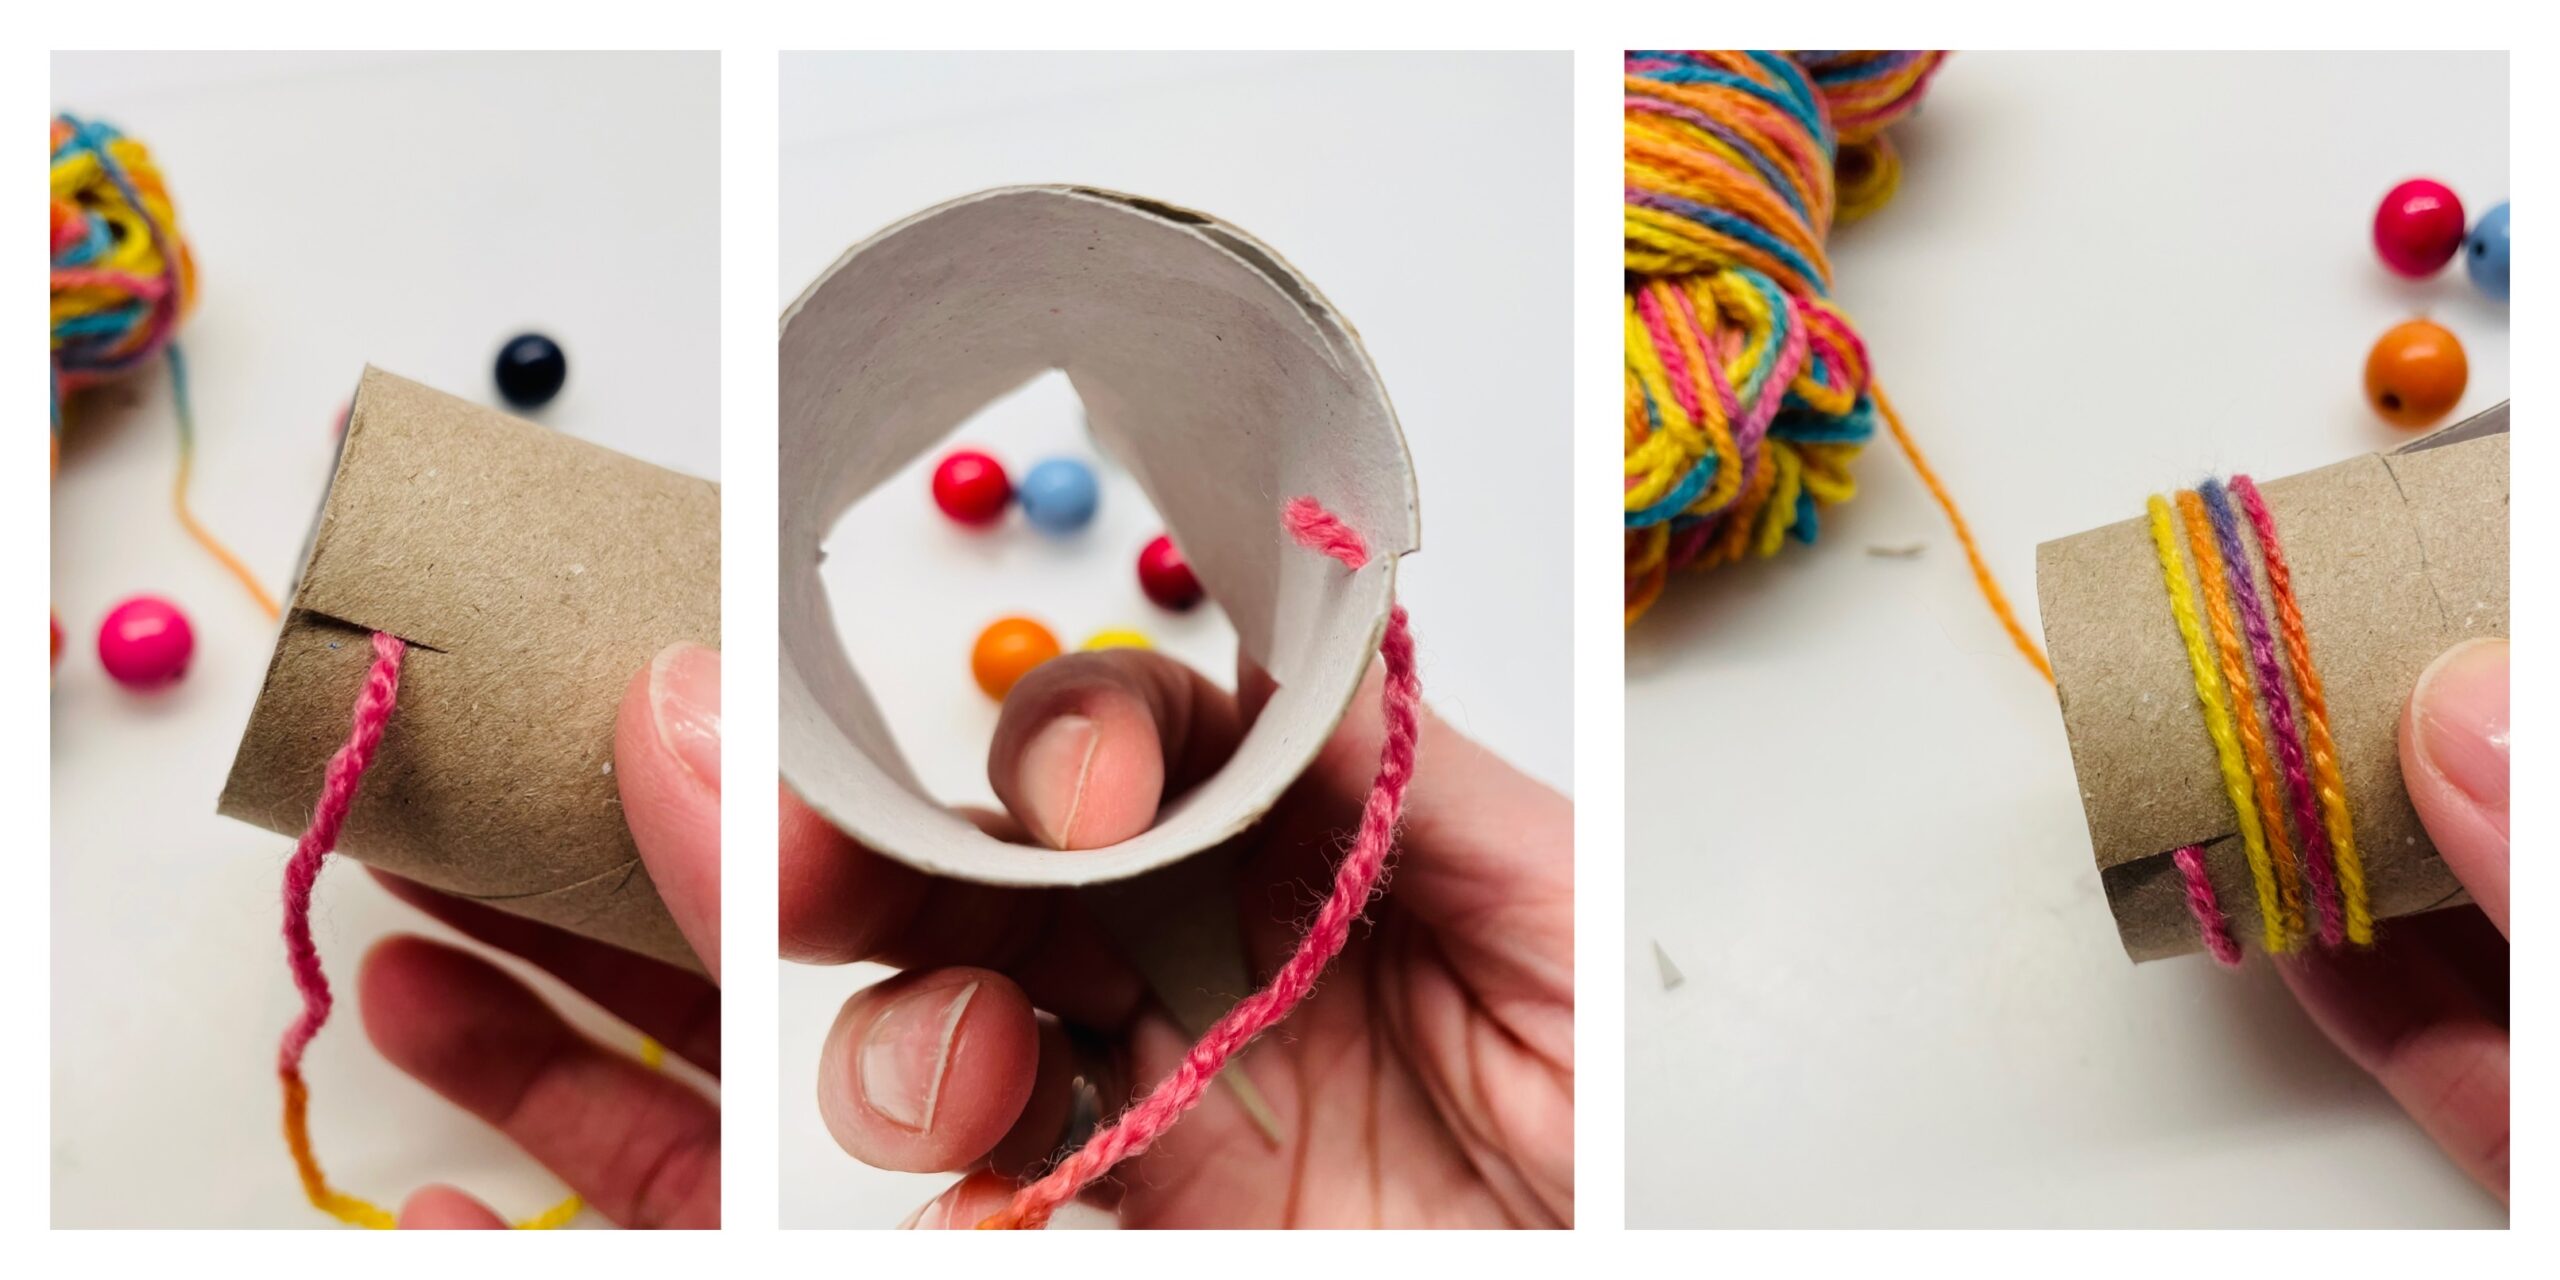 Bild zum Schritt 5 für das Bastel- und DIY-Abenteuer für Kinder: 'Danach schneidet ihr die Papprolle von unten ein kleines Stück...'